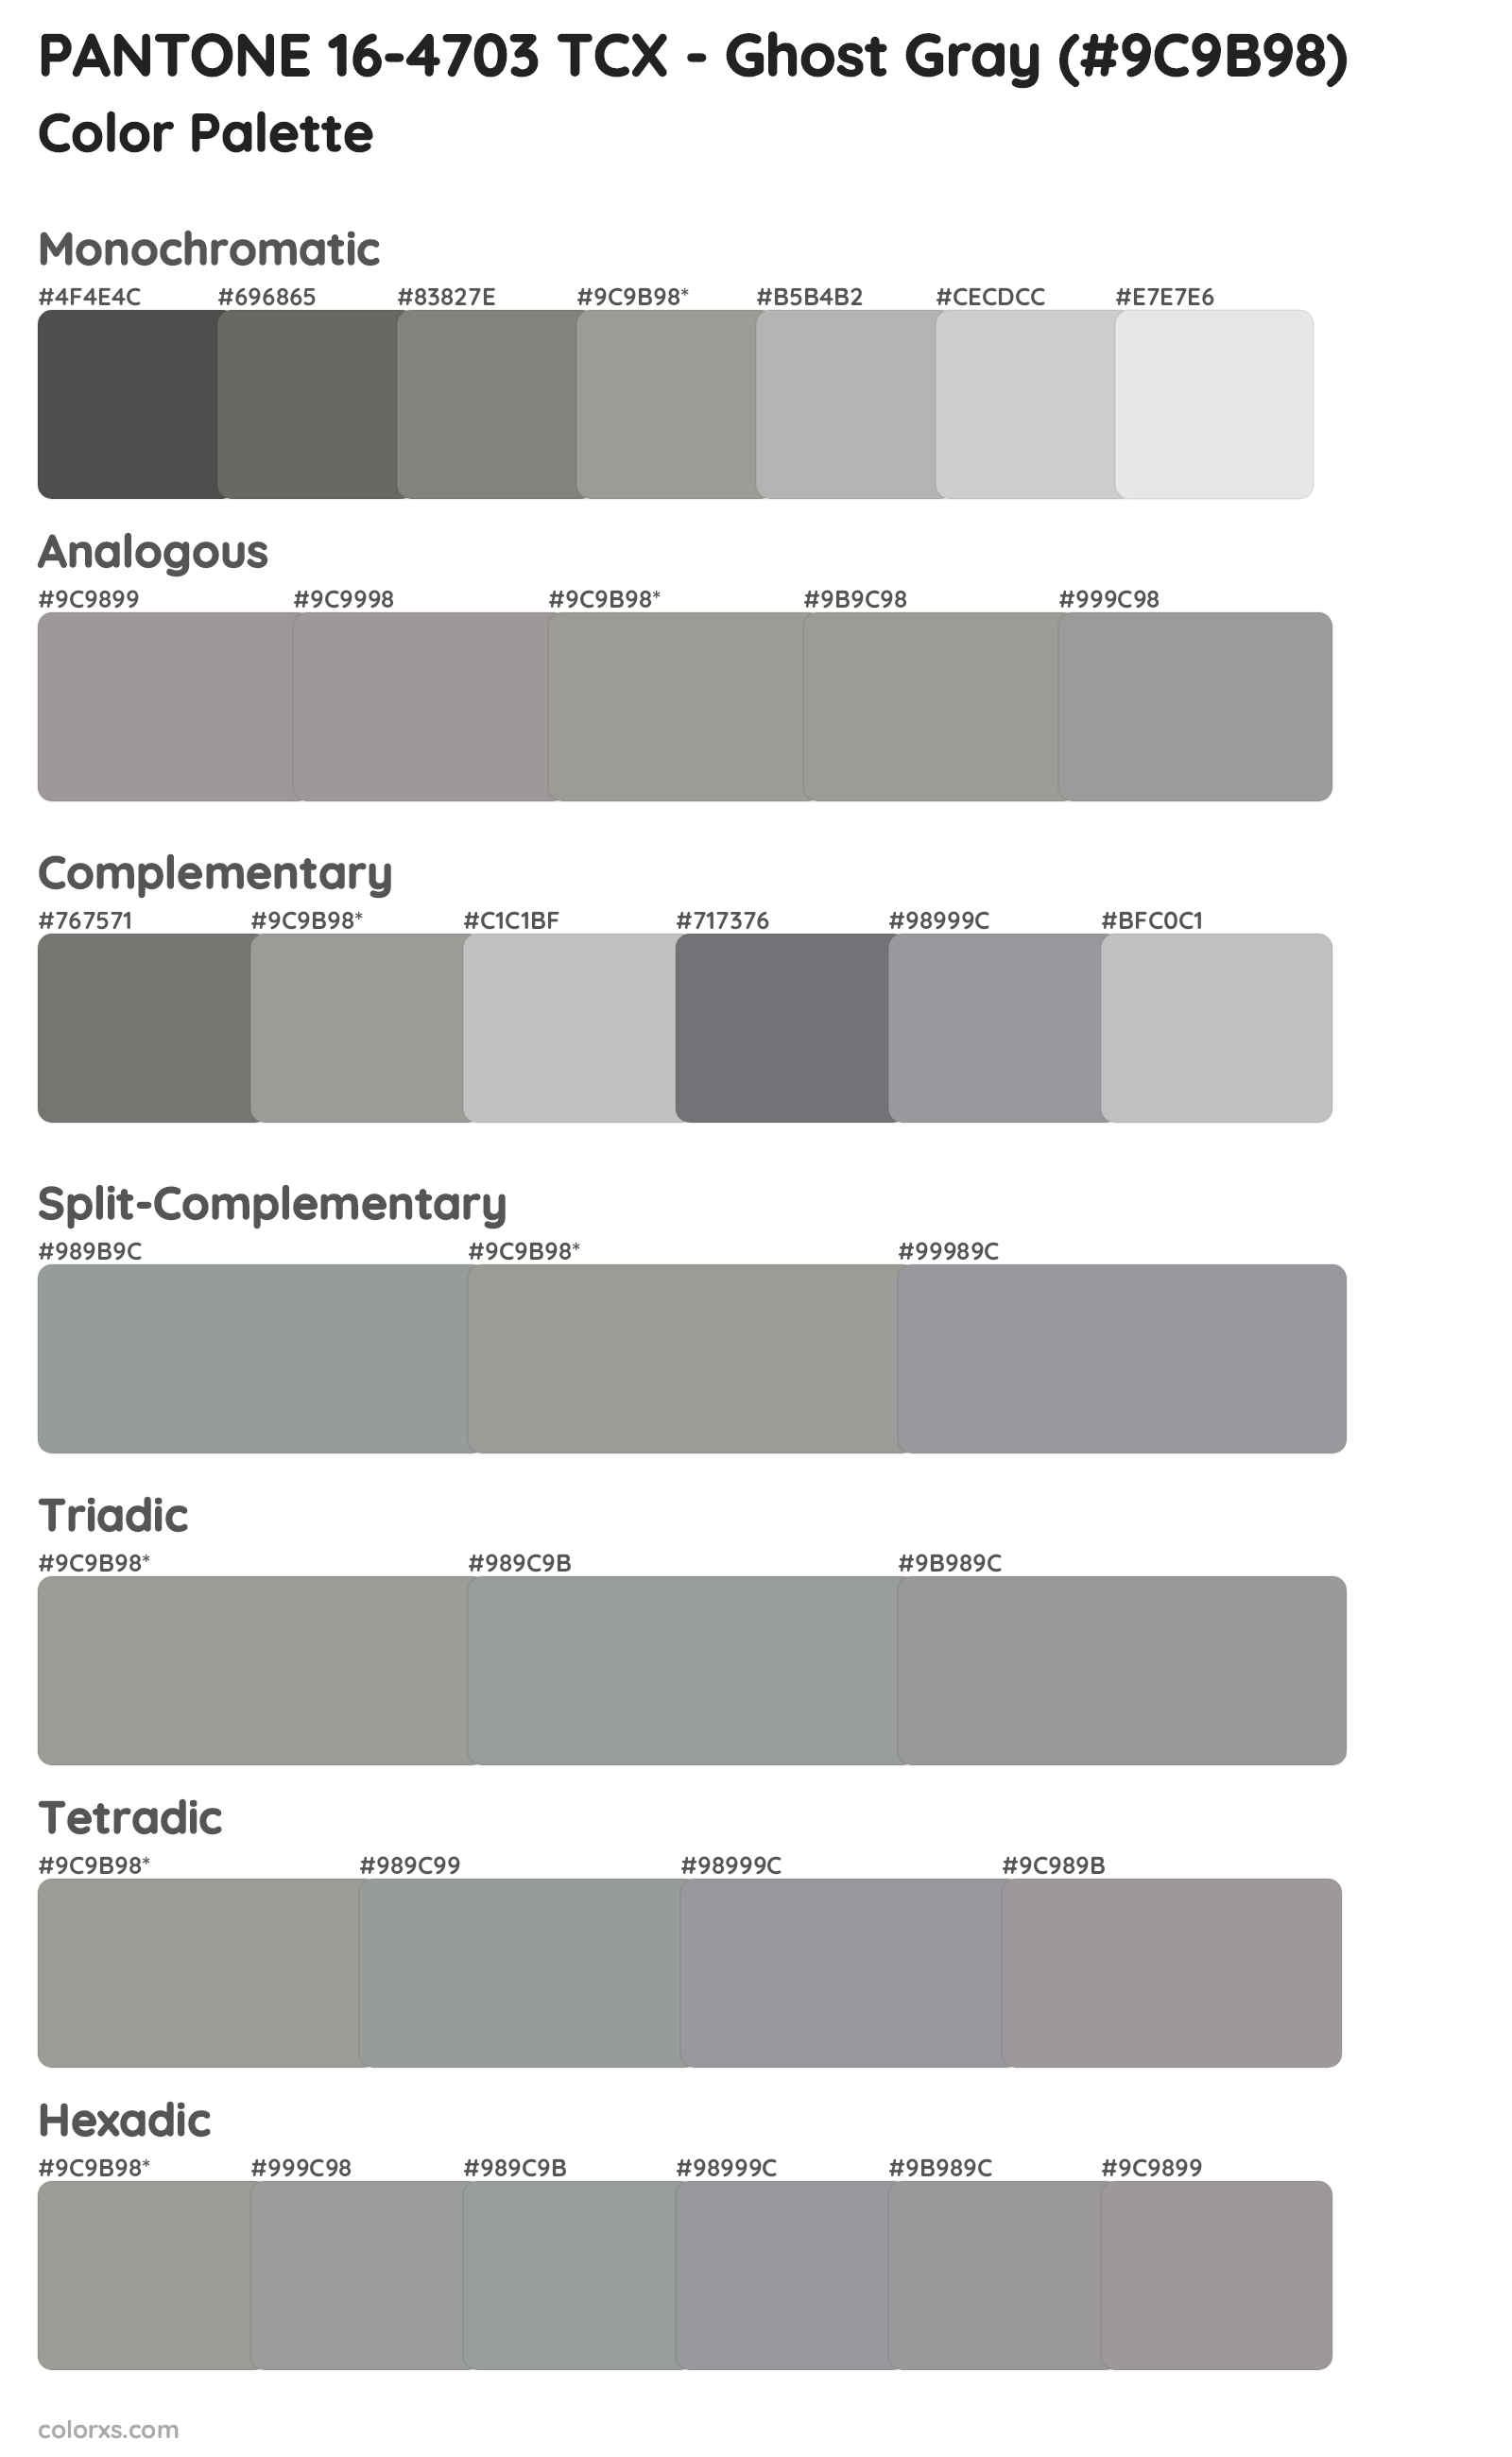 PANTONE 16-4703 TCX - Ghost Gray Color Scheme Palettes